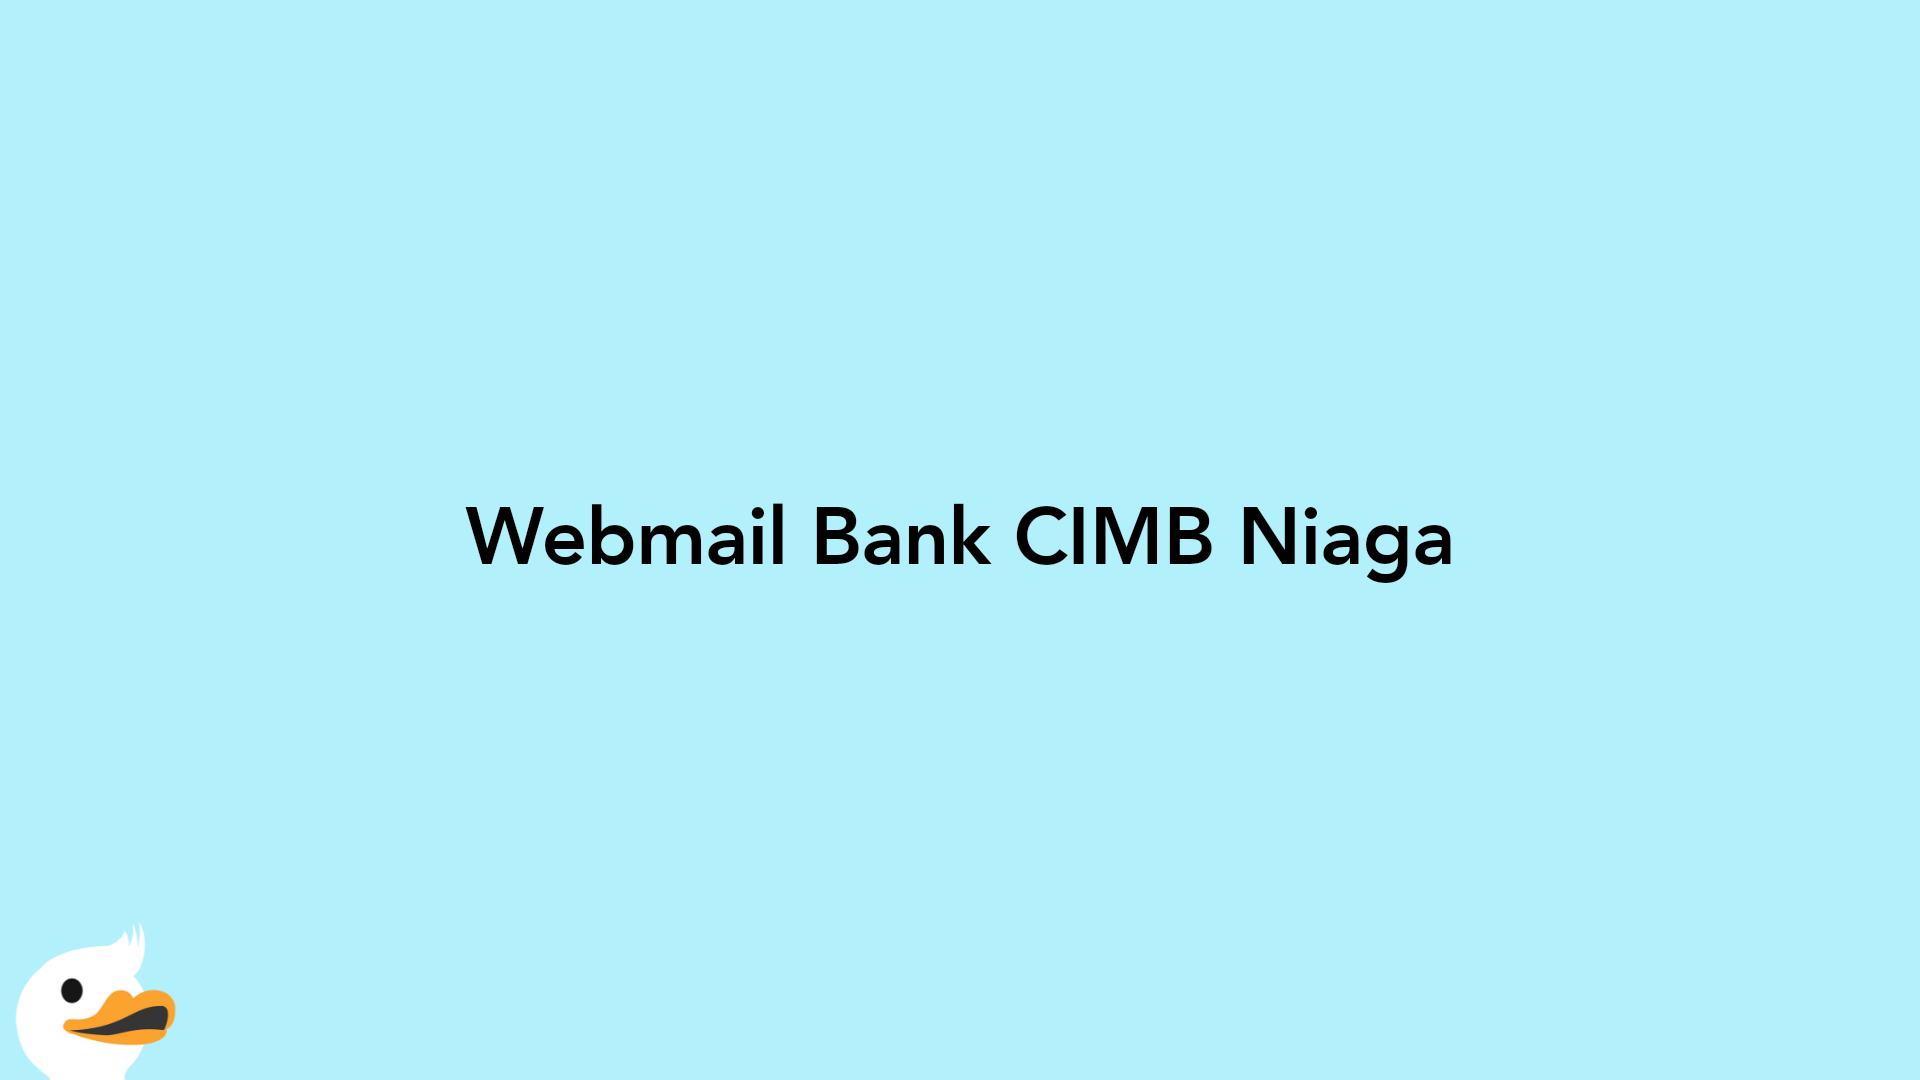 Webmail Bank CIMB Niaga